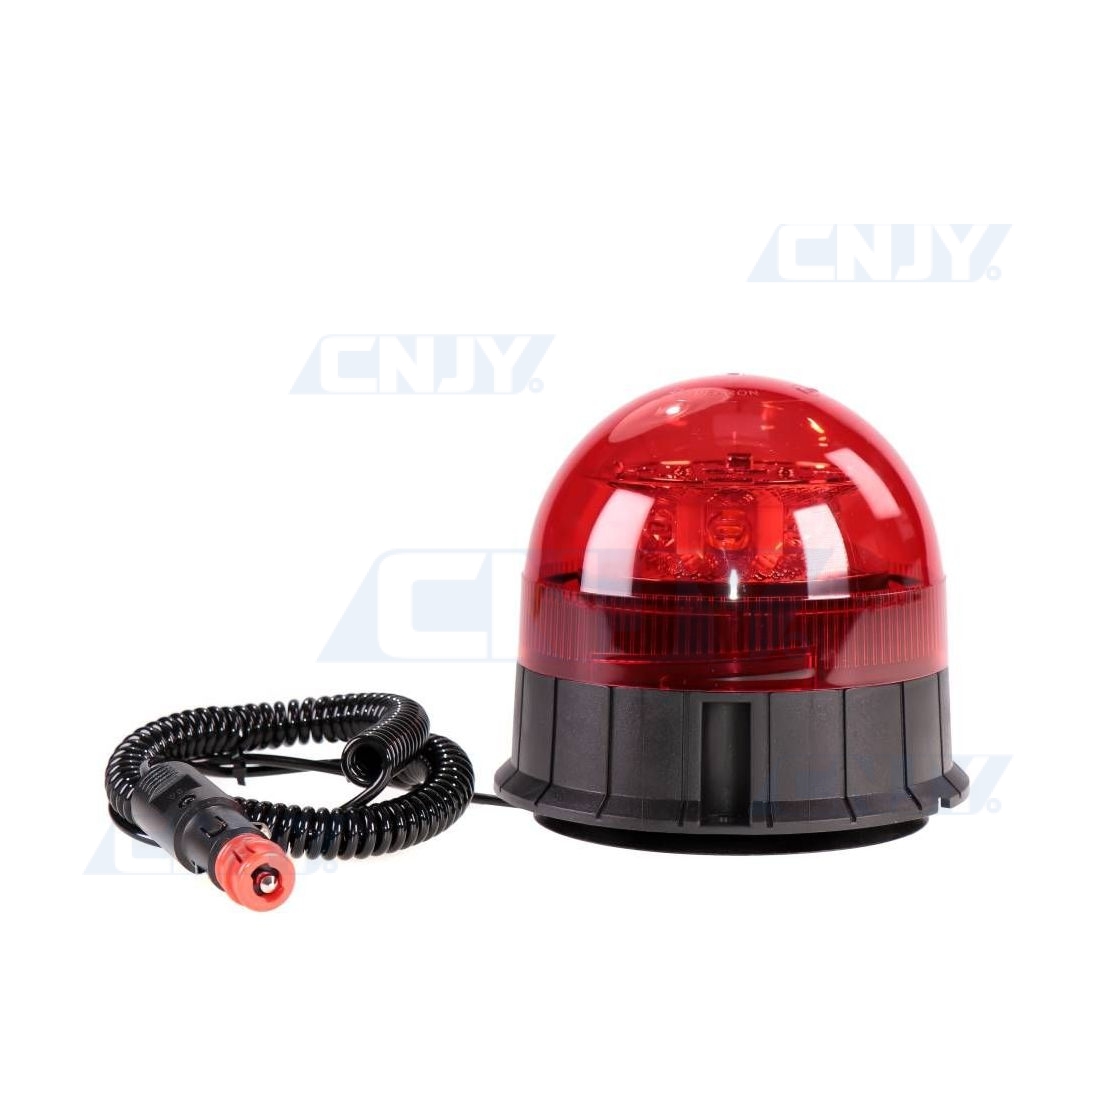  UPXSXT Gyrophare LED magnetique, 32 LED 12-24V 14 modes feux  clignotant d'urgence signalement lumières de clignotement pour véhicules de  génie, camions, voitures de police (rouges et bleues)